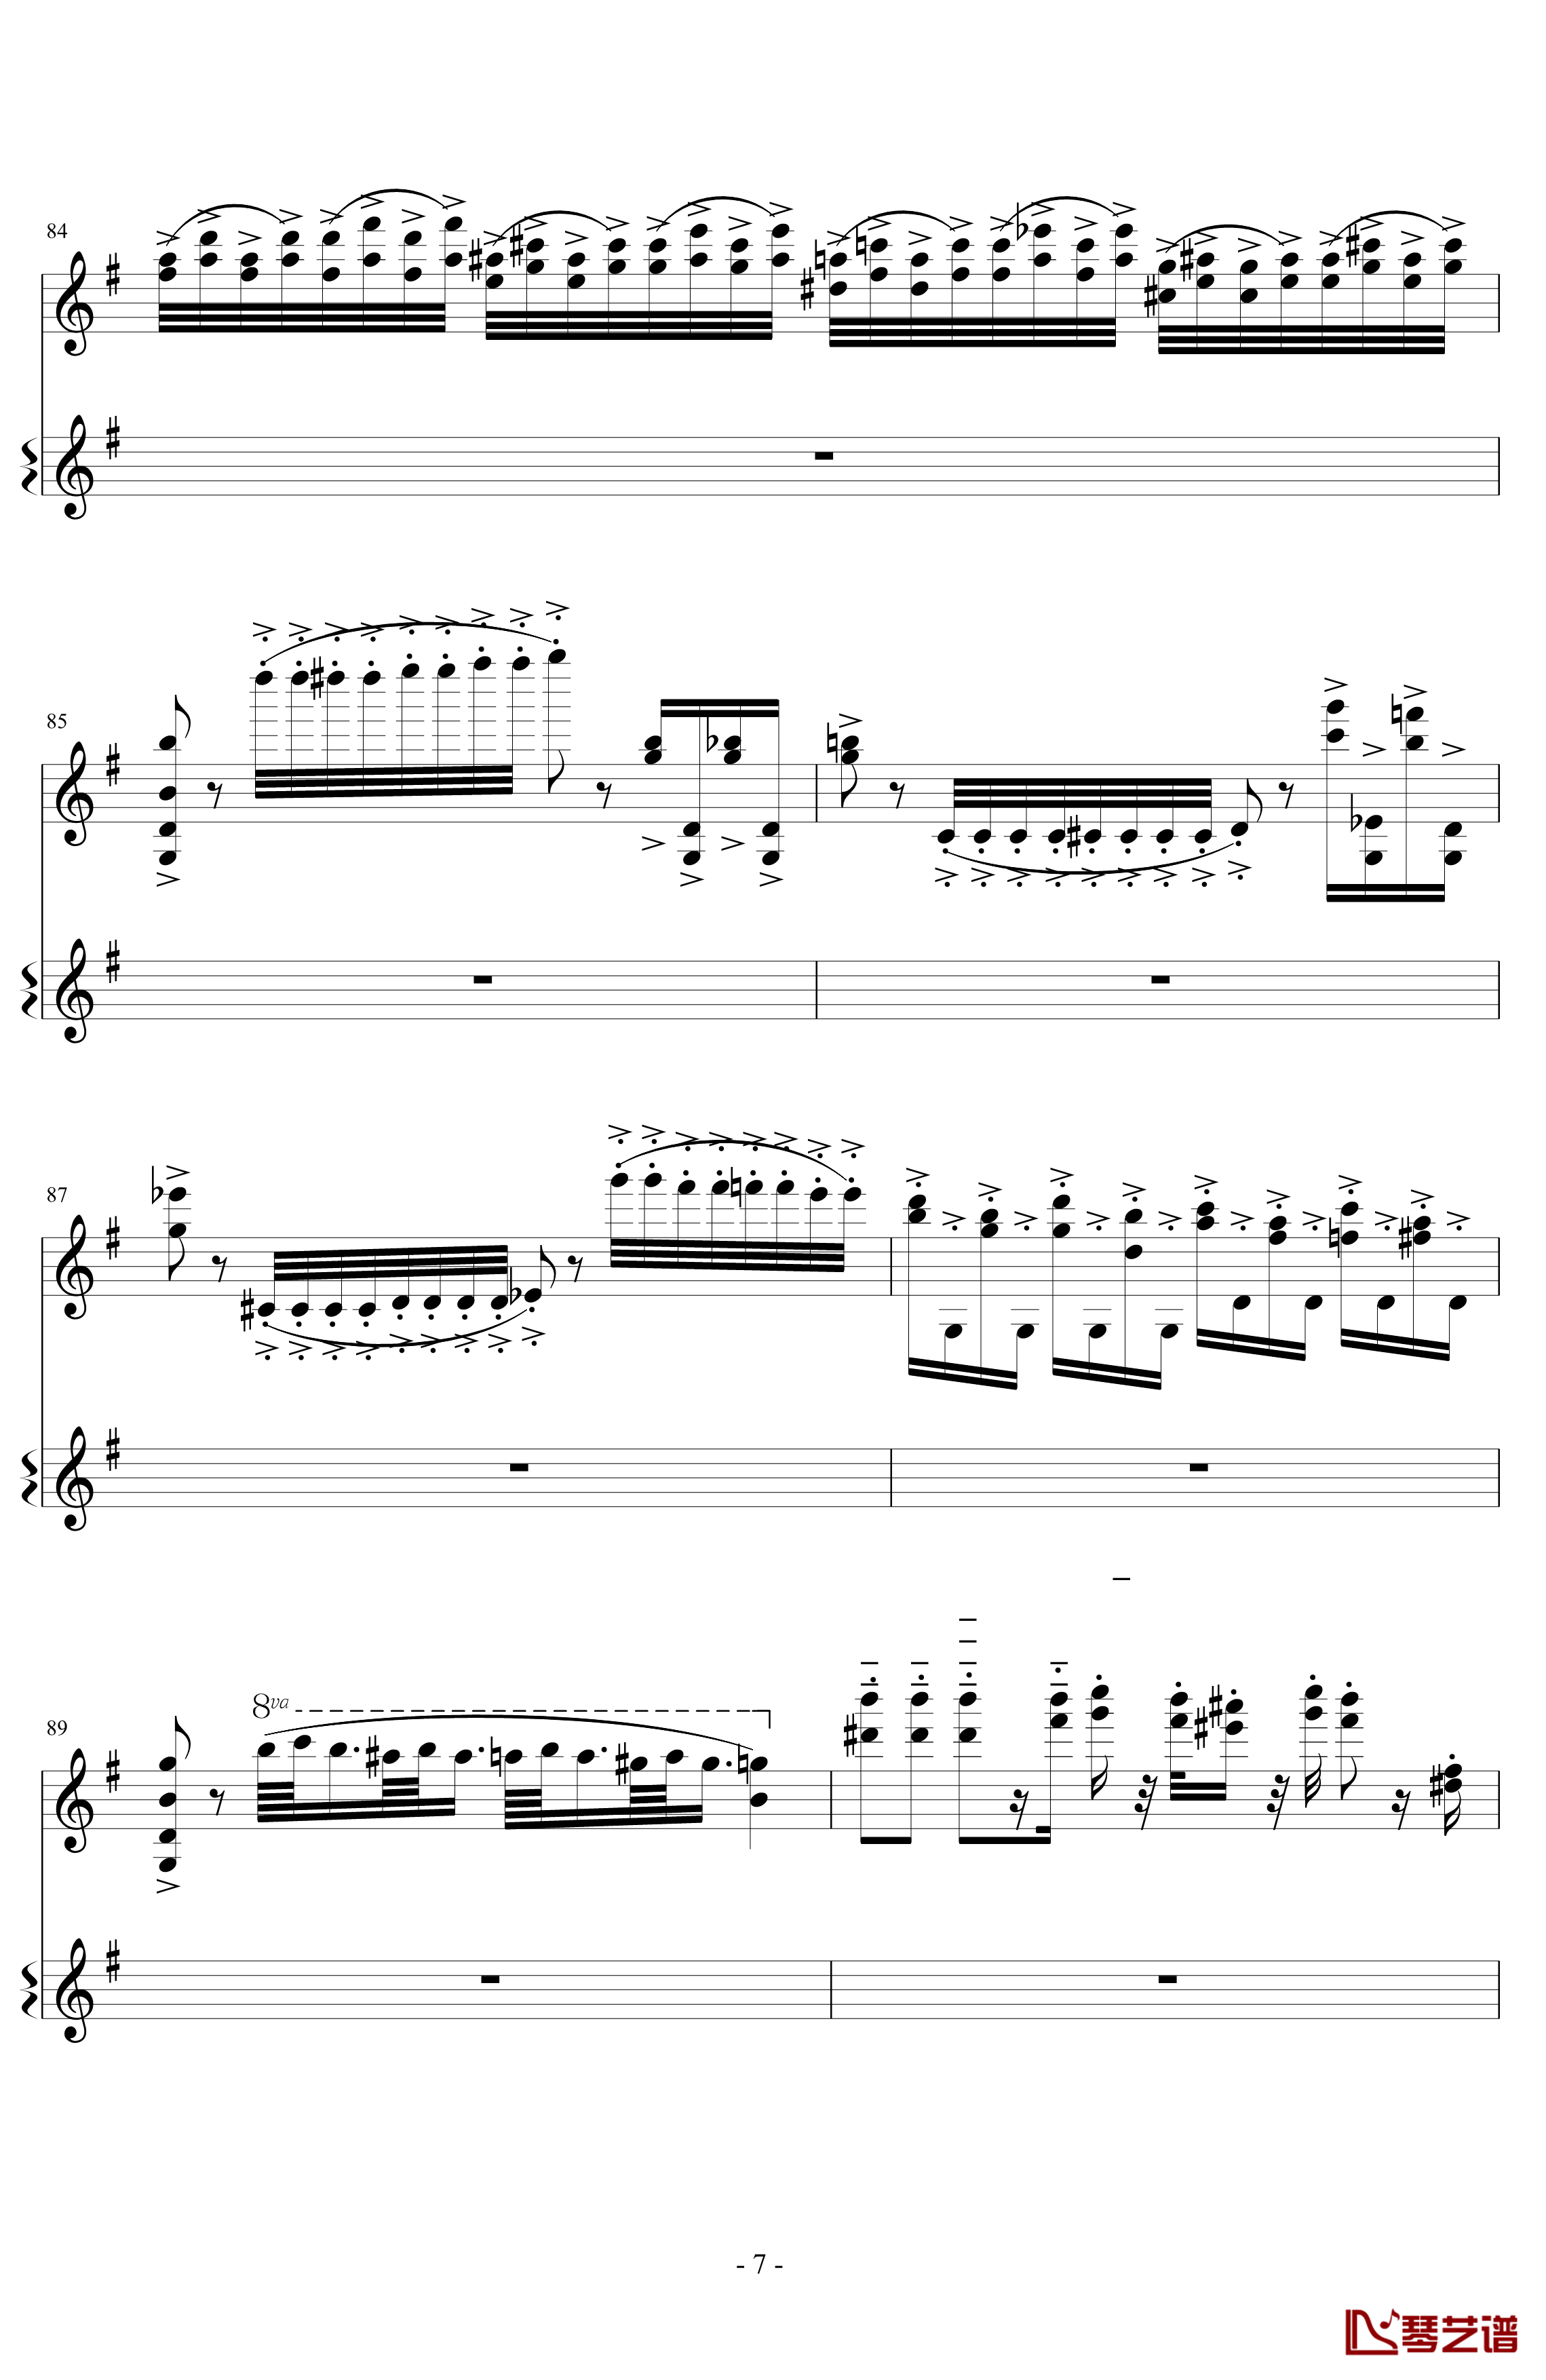 意大利国歌变奏曲钢琴谱-DXF7